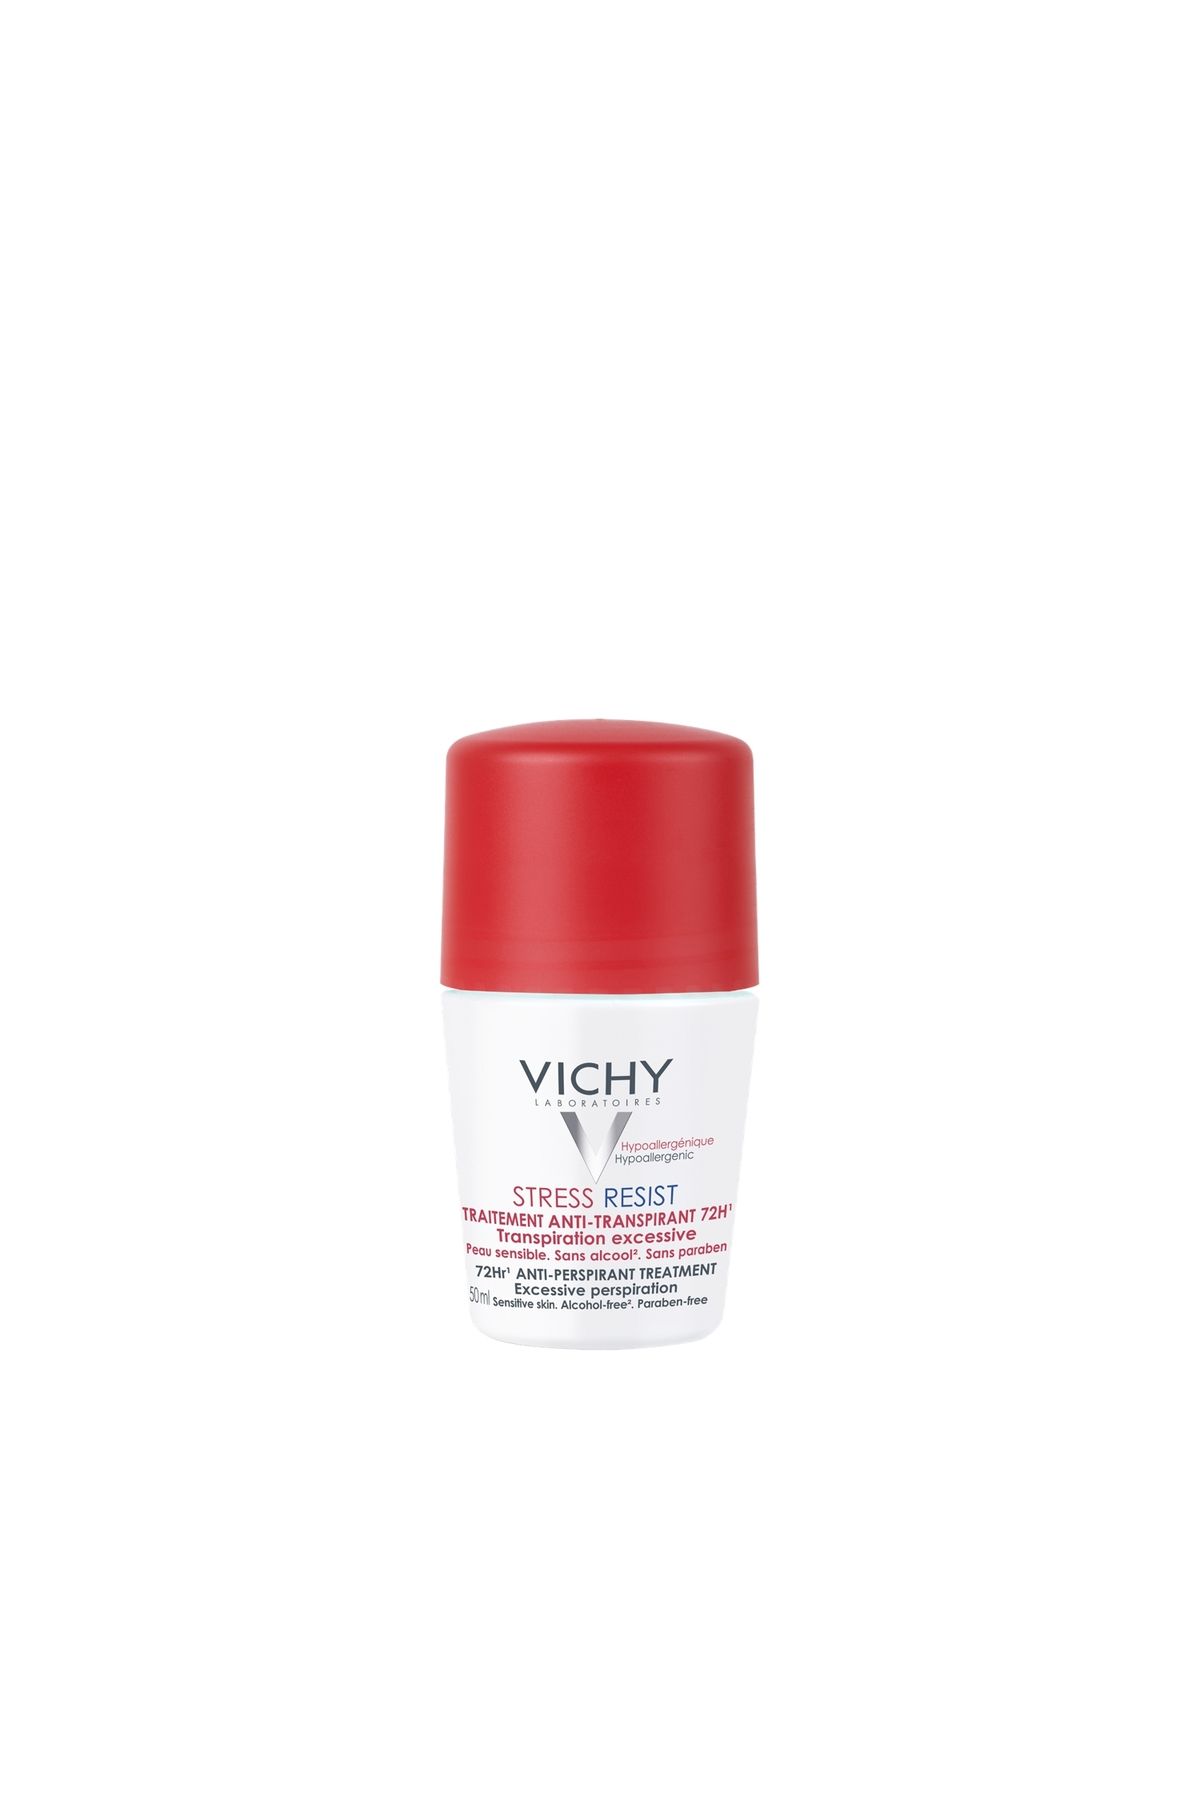 Vichy Terleme karşıtı yoğun kontrol sağlayan roll-on deodorant (Stress Resist Hassas Ciltler için 72h)